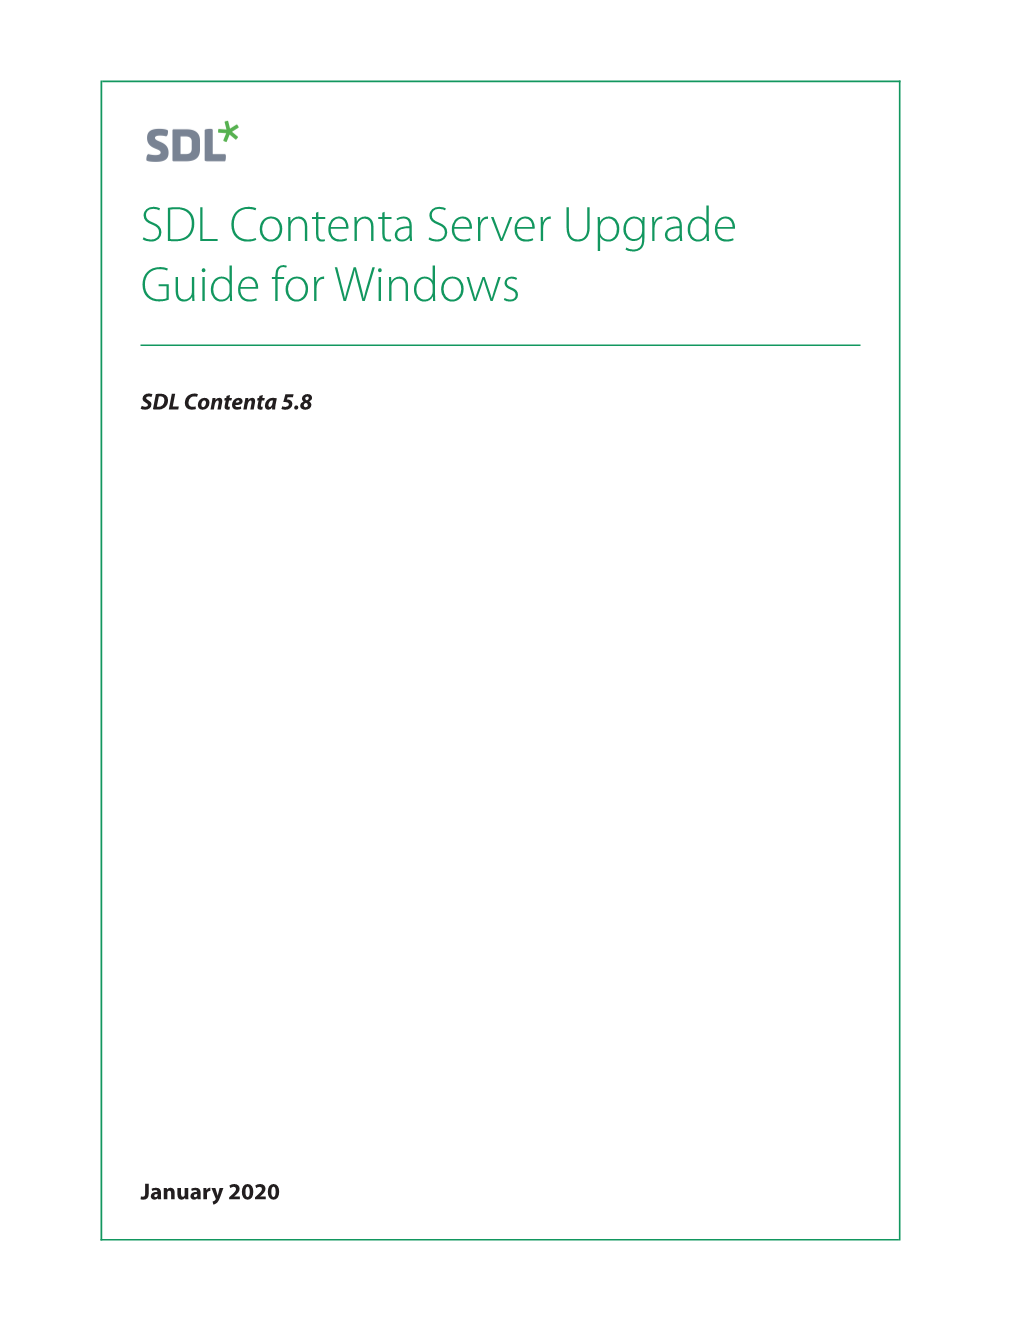 SDL Contenta Server Upgrade Guide for Windows